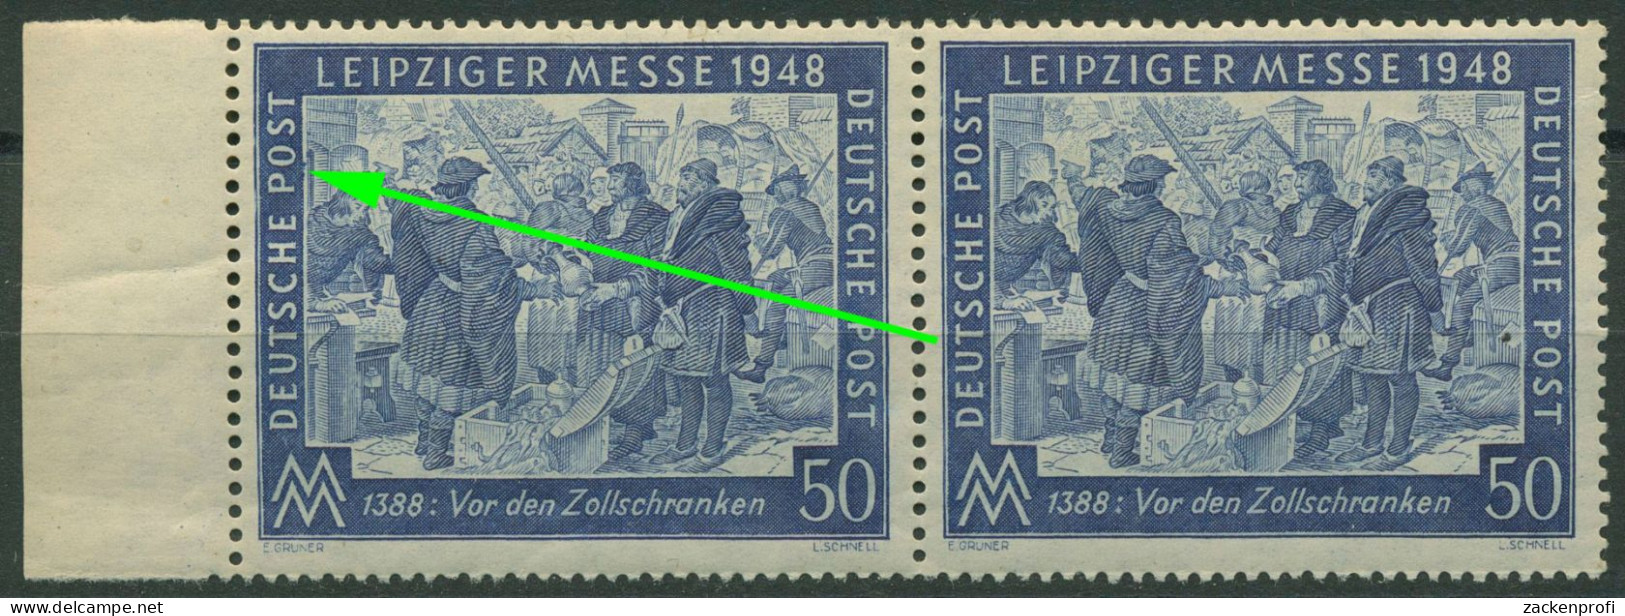 Alliierte Besetzung 1948 Leipziger Messe Mit Plattenfehler 967 I Postfrisch - Mint